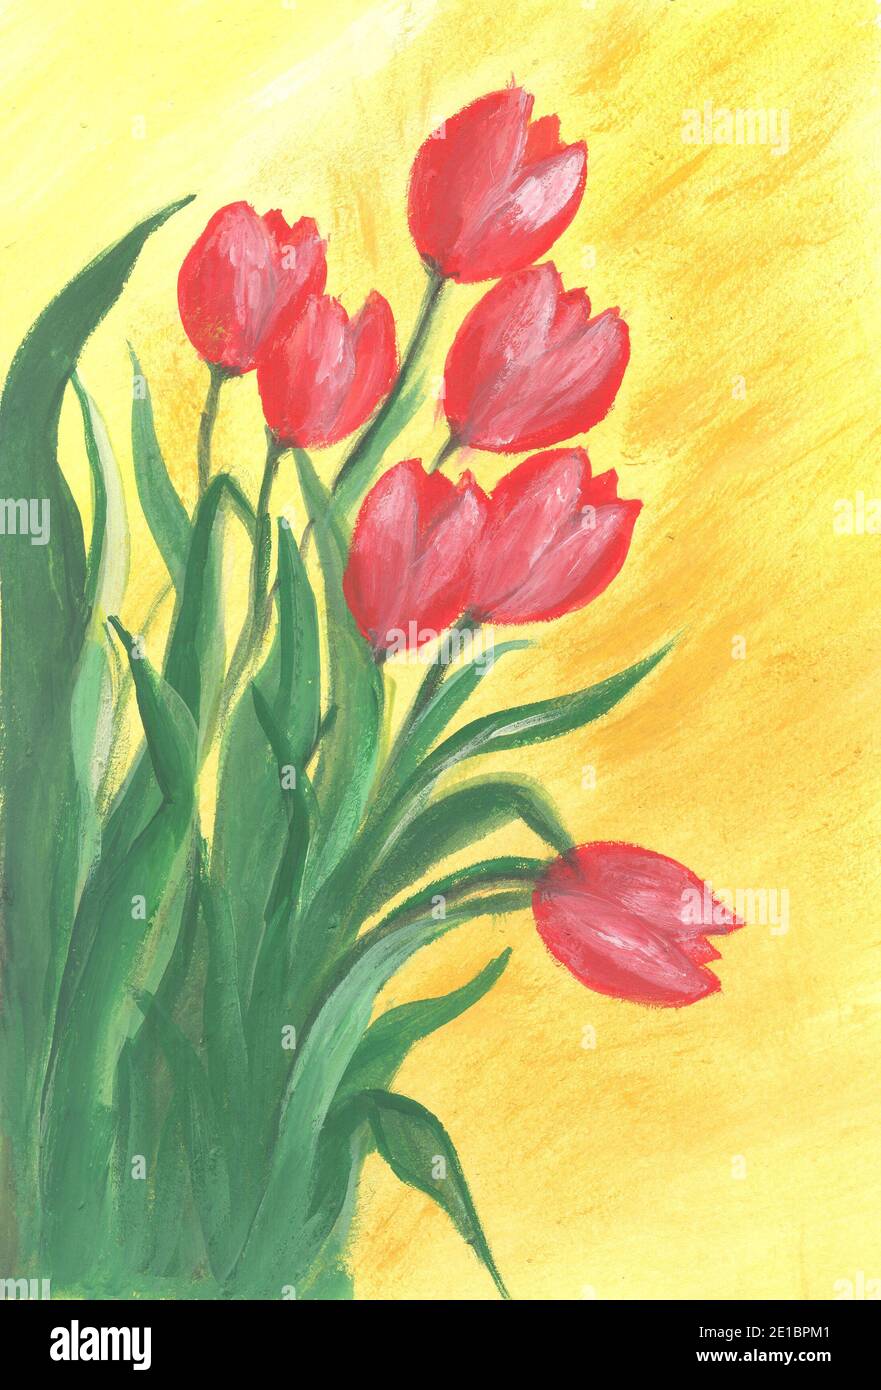 Fleurs de tulipes rouges, peinture à l'aquarelle. Composition abstraite  créative avec bouquet de fleurs de tulipe Photo Stock - Alamy